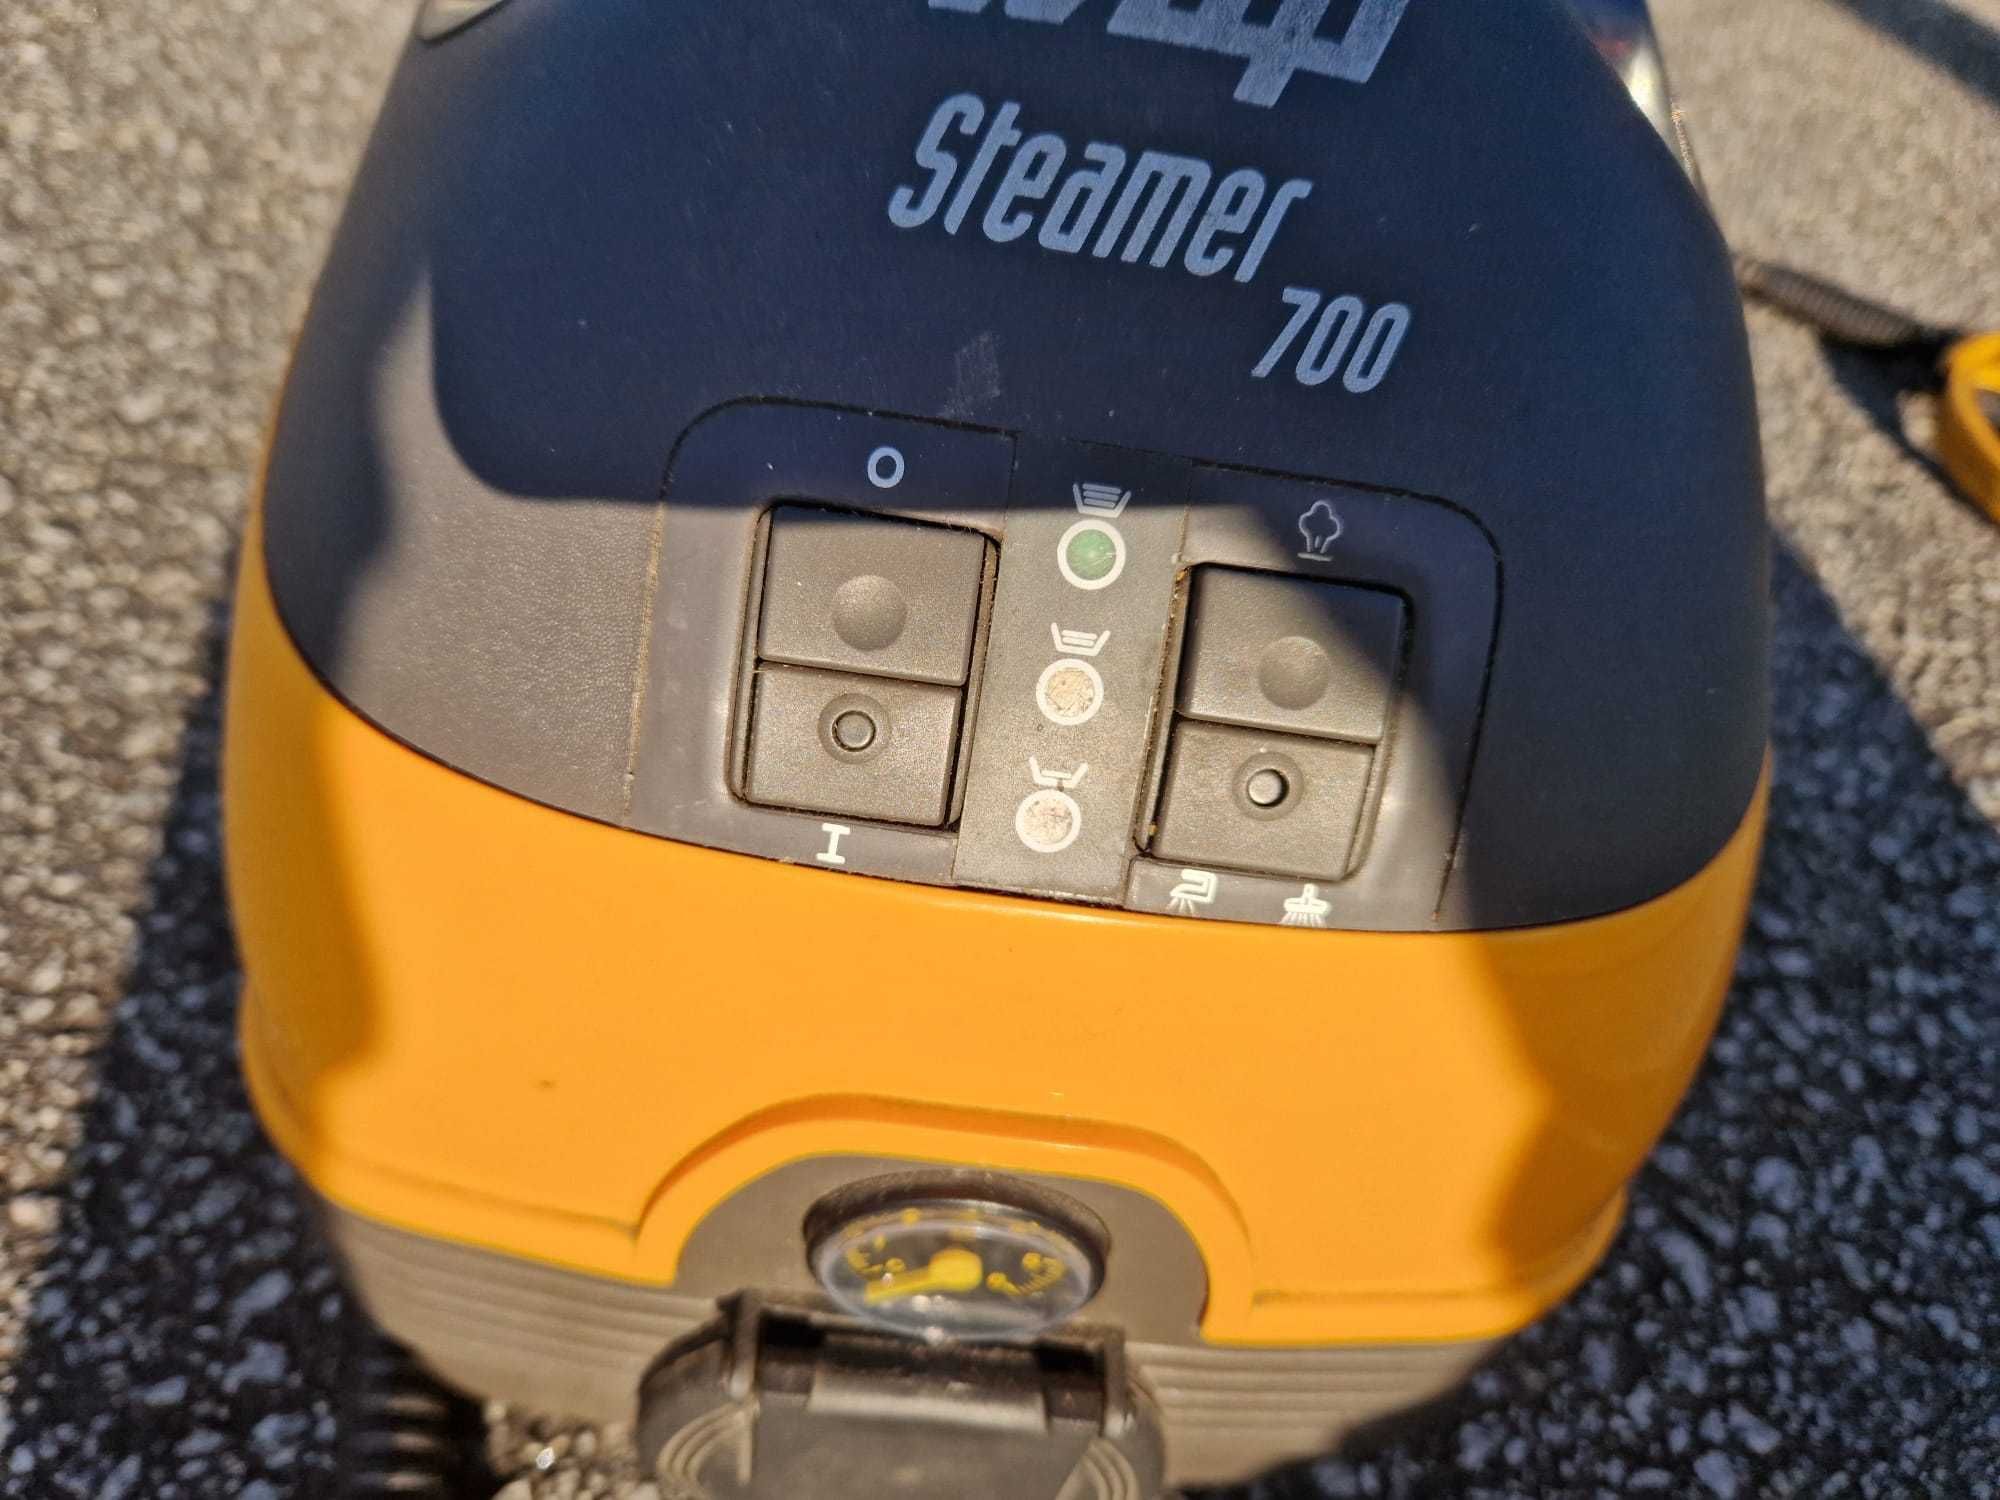 Vaporeta steamer 700